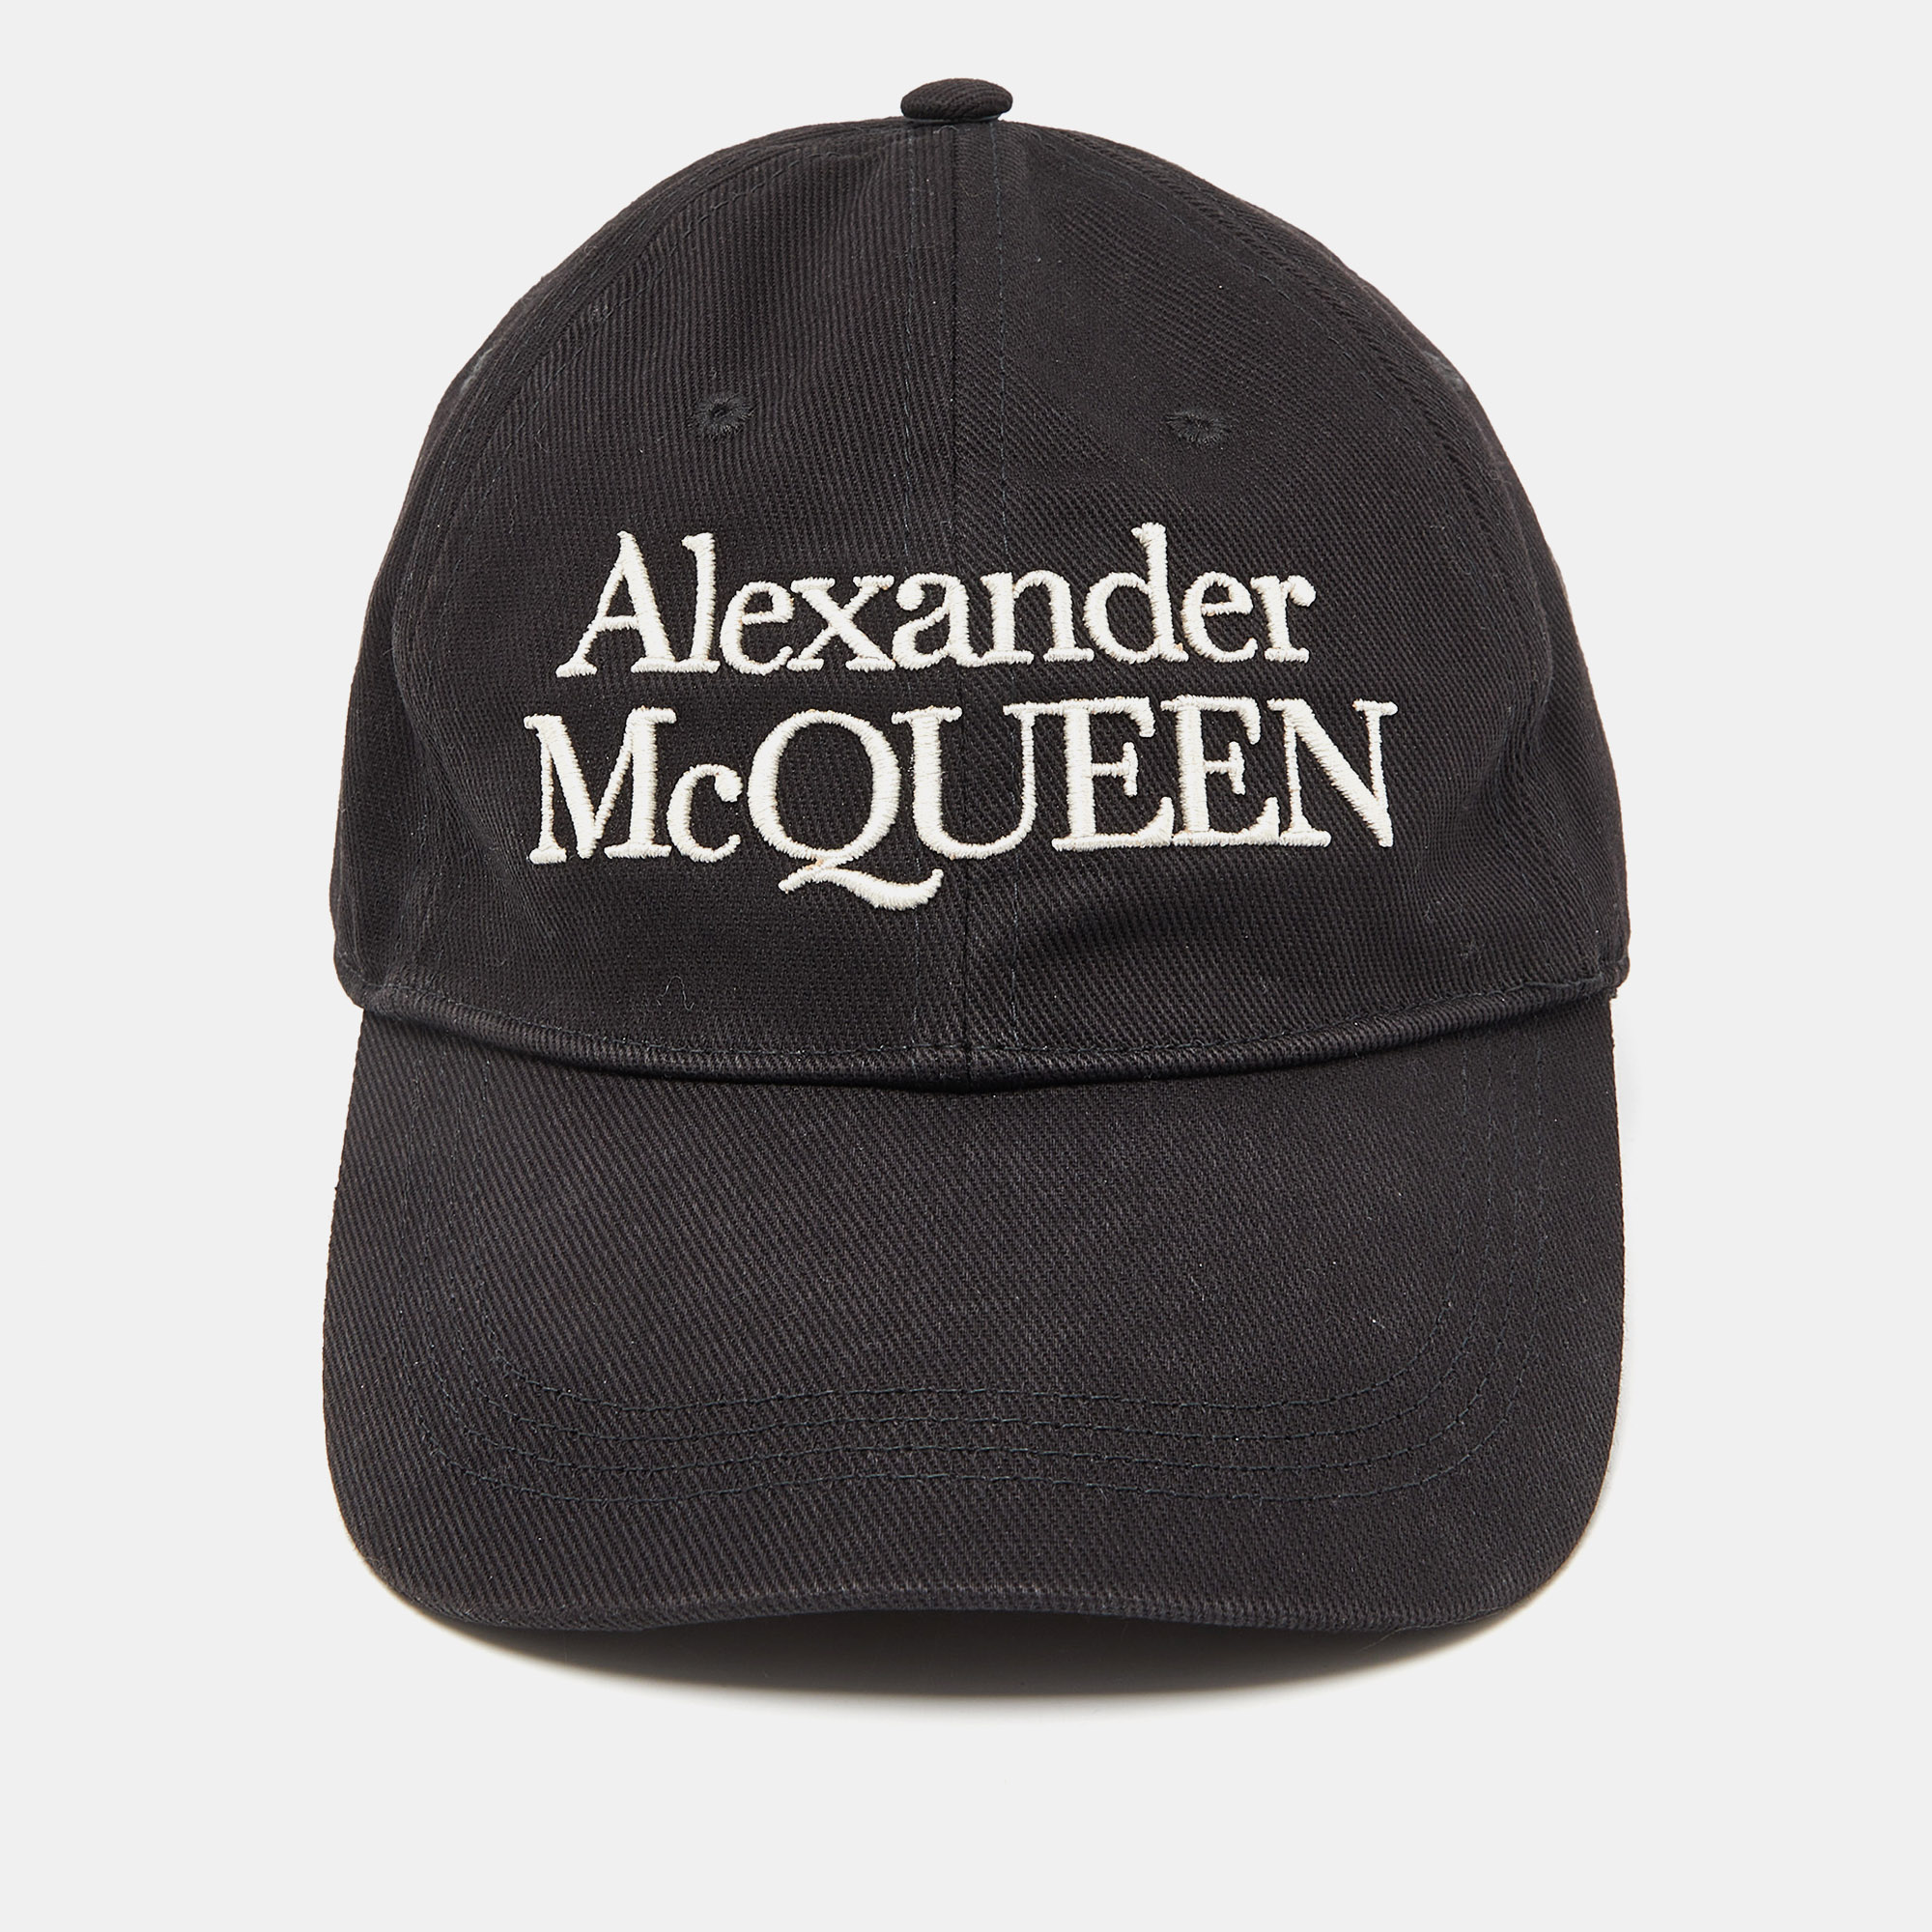 Alexander mcqueen black logo embroidered cotton baseball cap